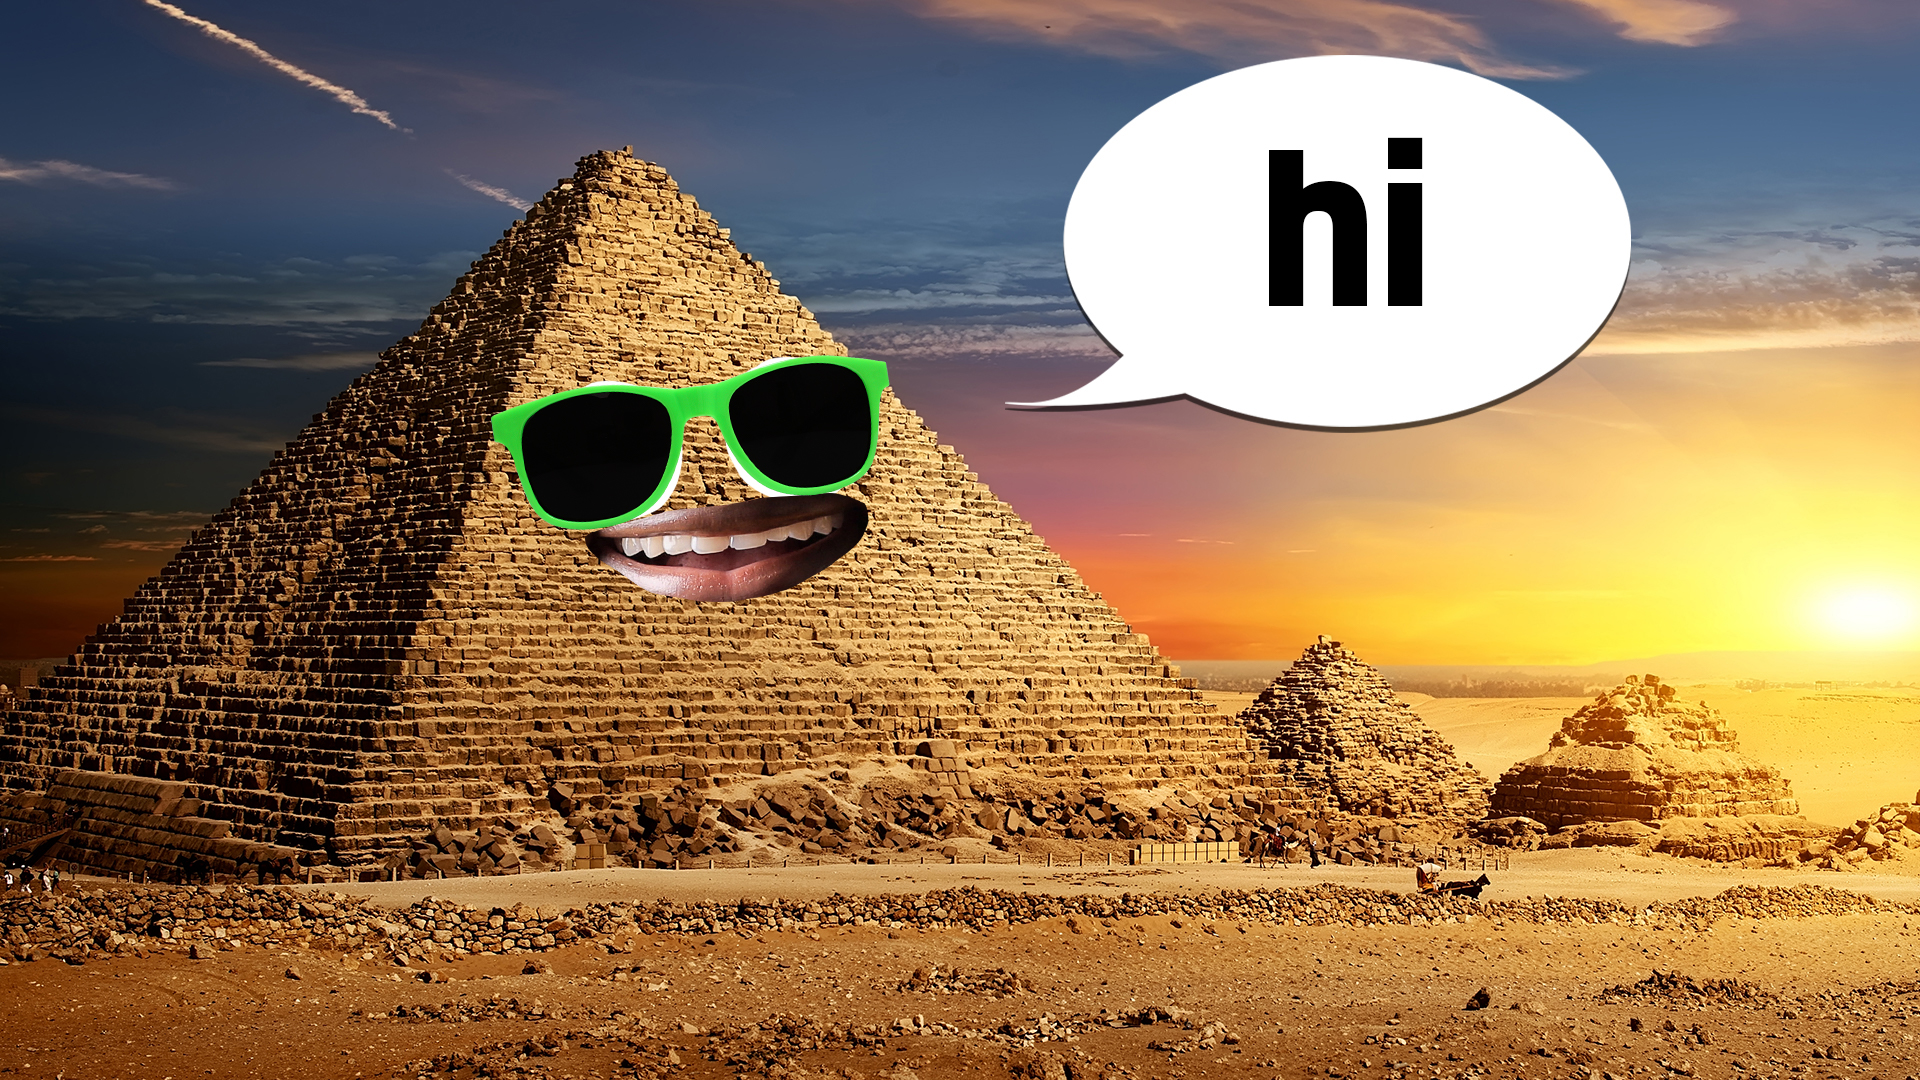 An Egyptian pyramid says hi